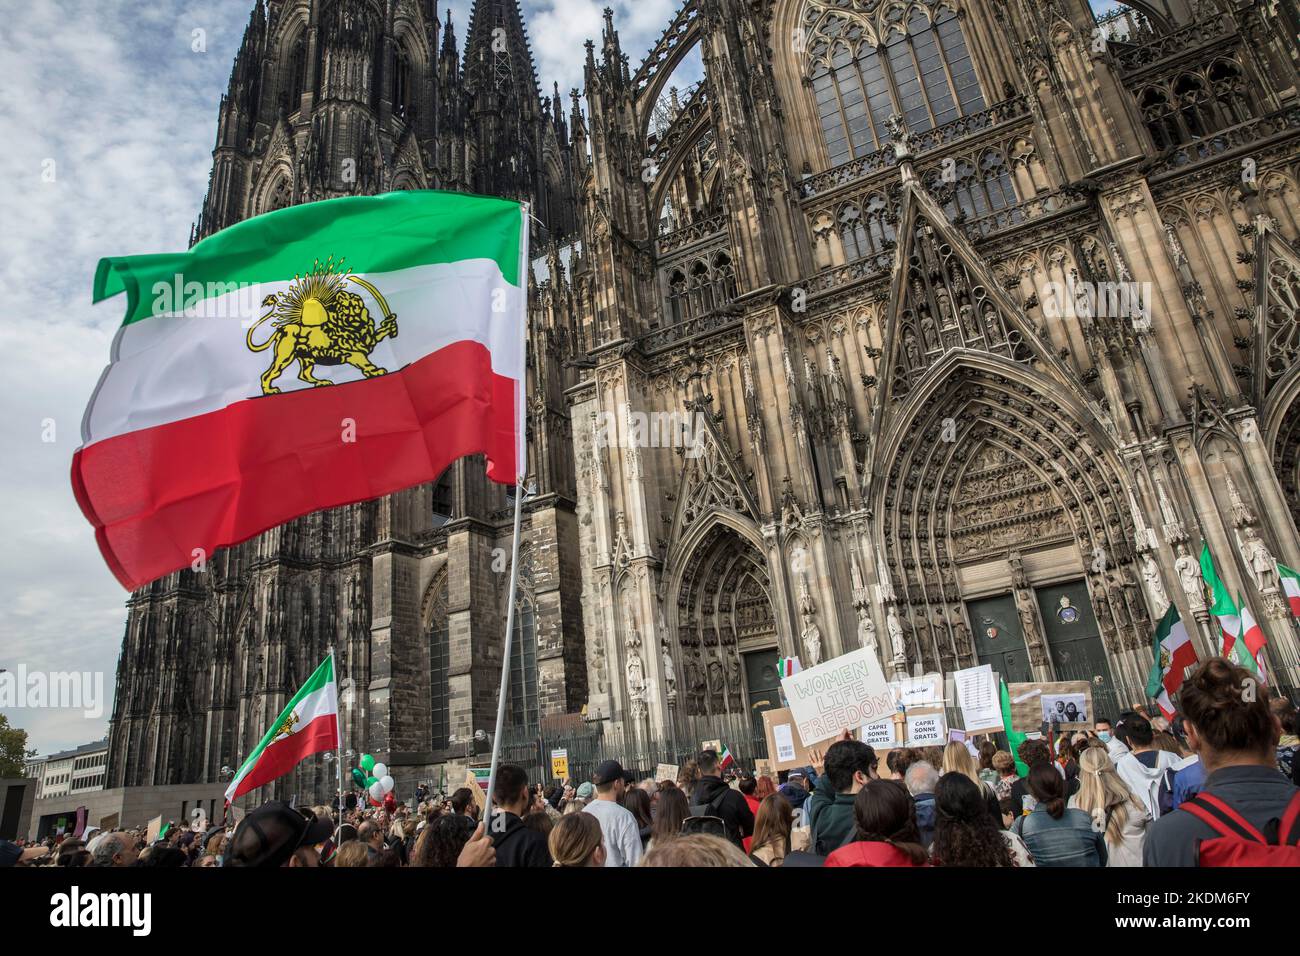 Manifestazione e raduno in solidarietà con le donne che protestano in Iran, slogan di protesta 'Donna. Vita. Freedom.', Colonia, Germania, 29.10.2022. Demonstrat Foto Stock